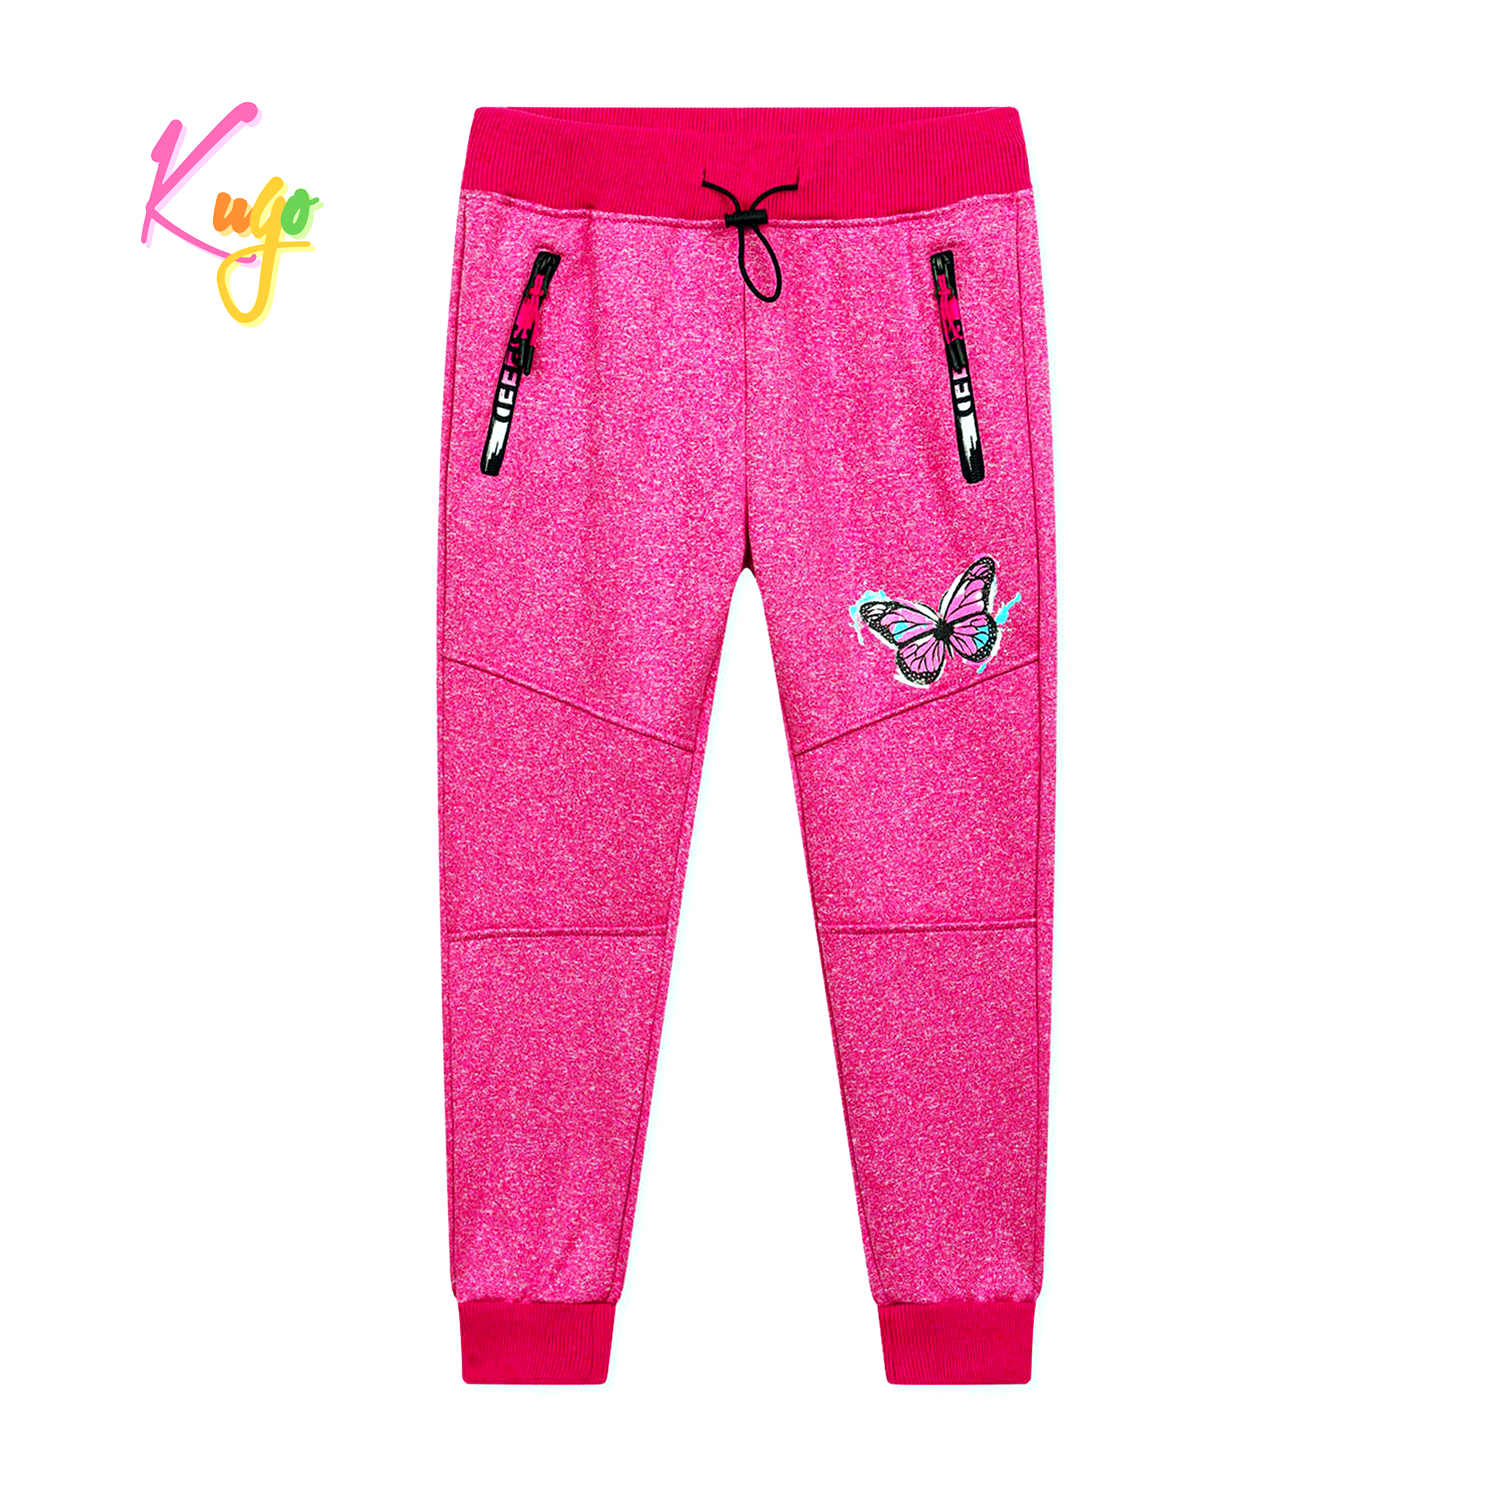 Dívčí softshellové tepláky - KUGO GK8635, růžová Barva: Růžová, Velikost: 134